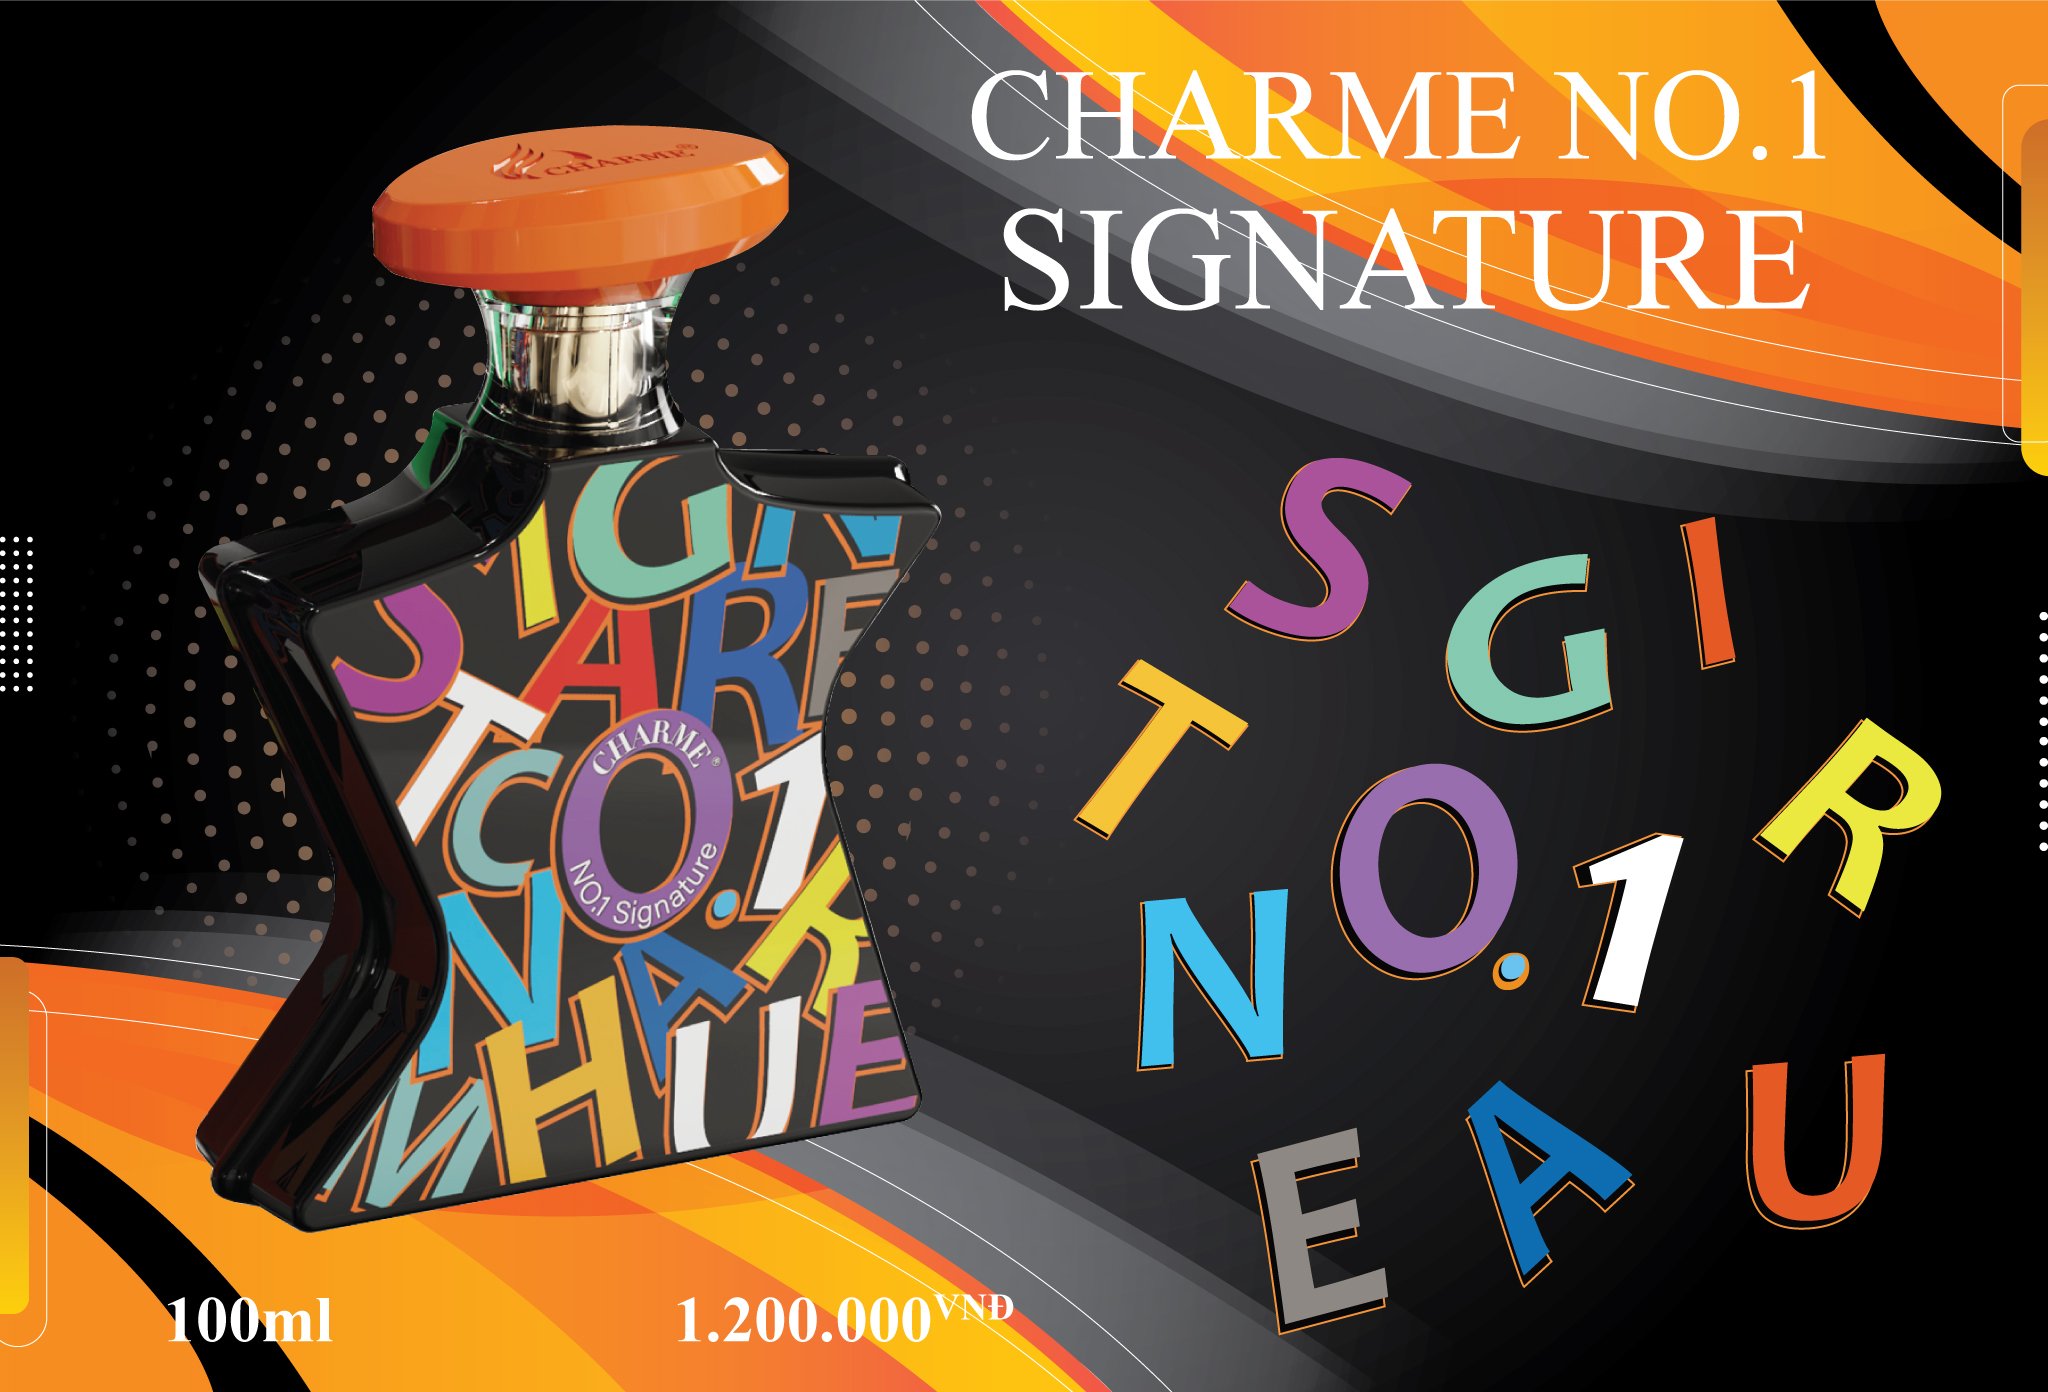 Nước hoa Charme No.1 Signature chính hãng - 8936194690463